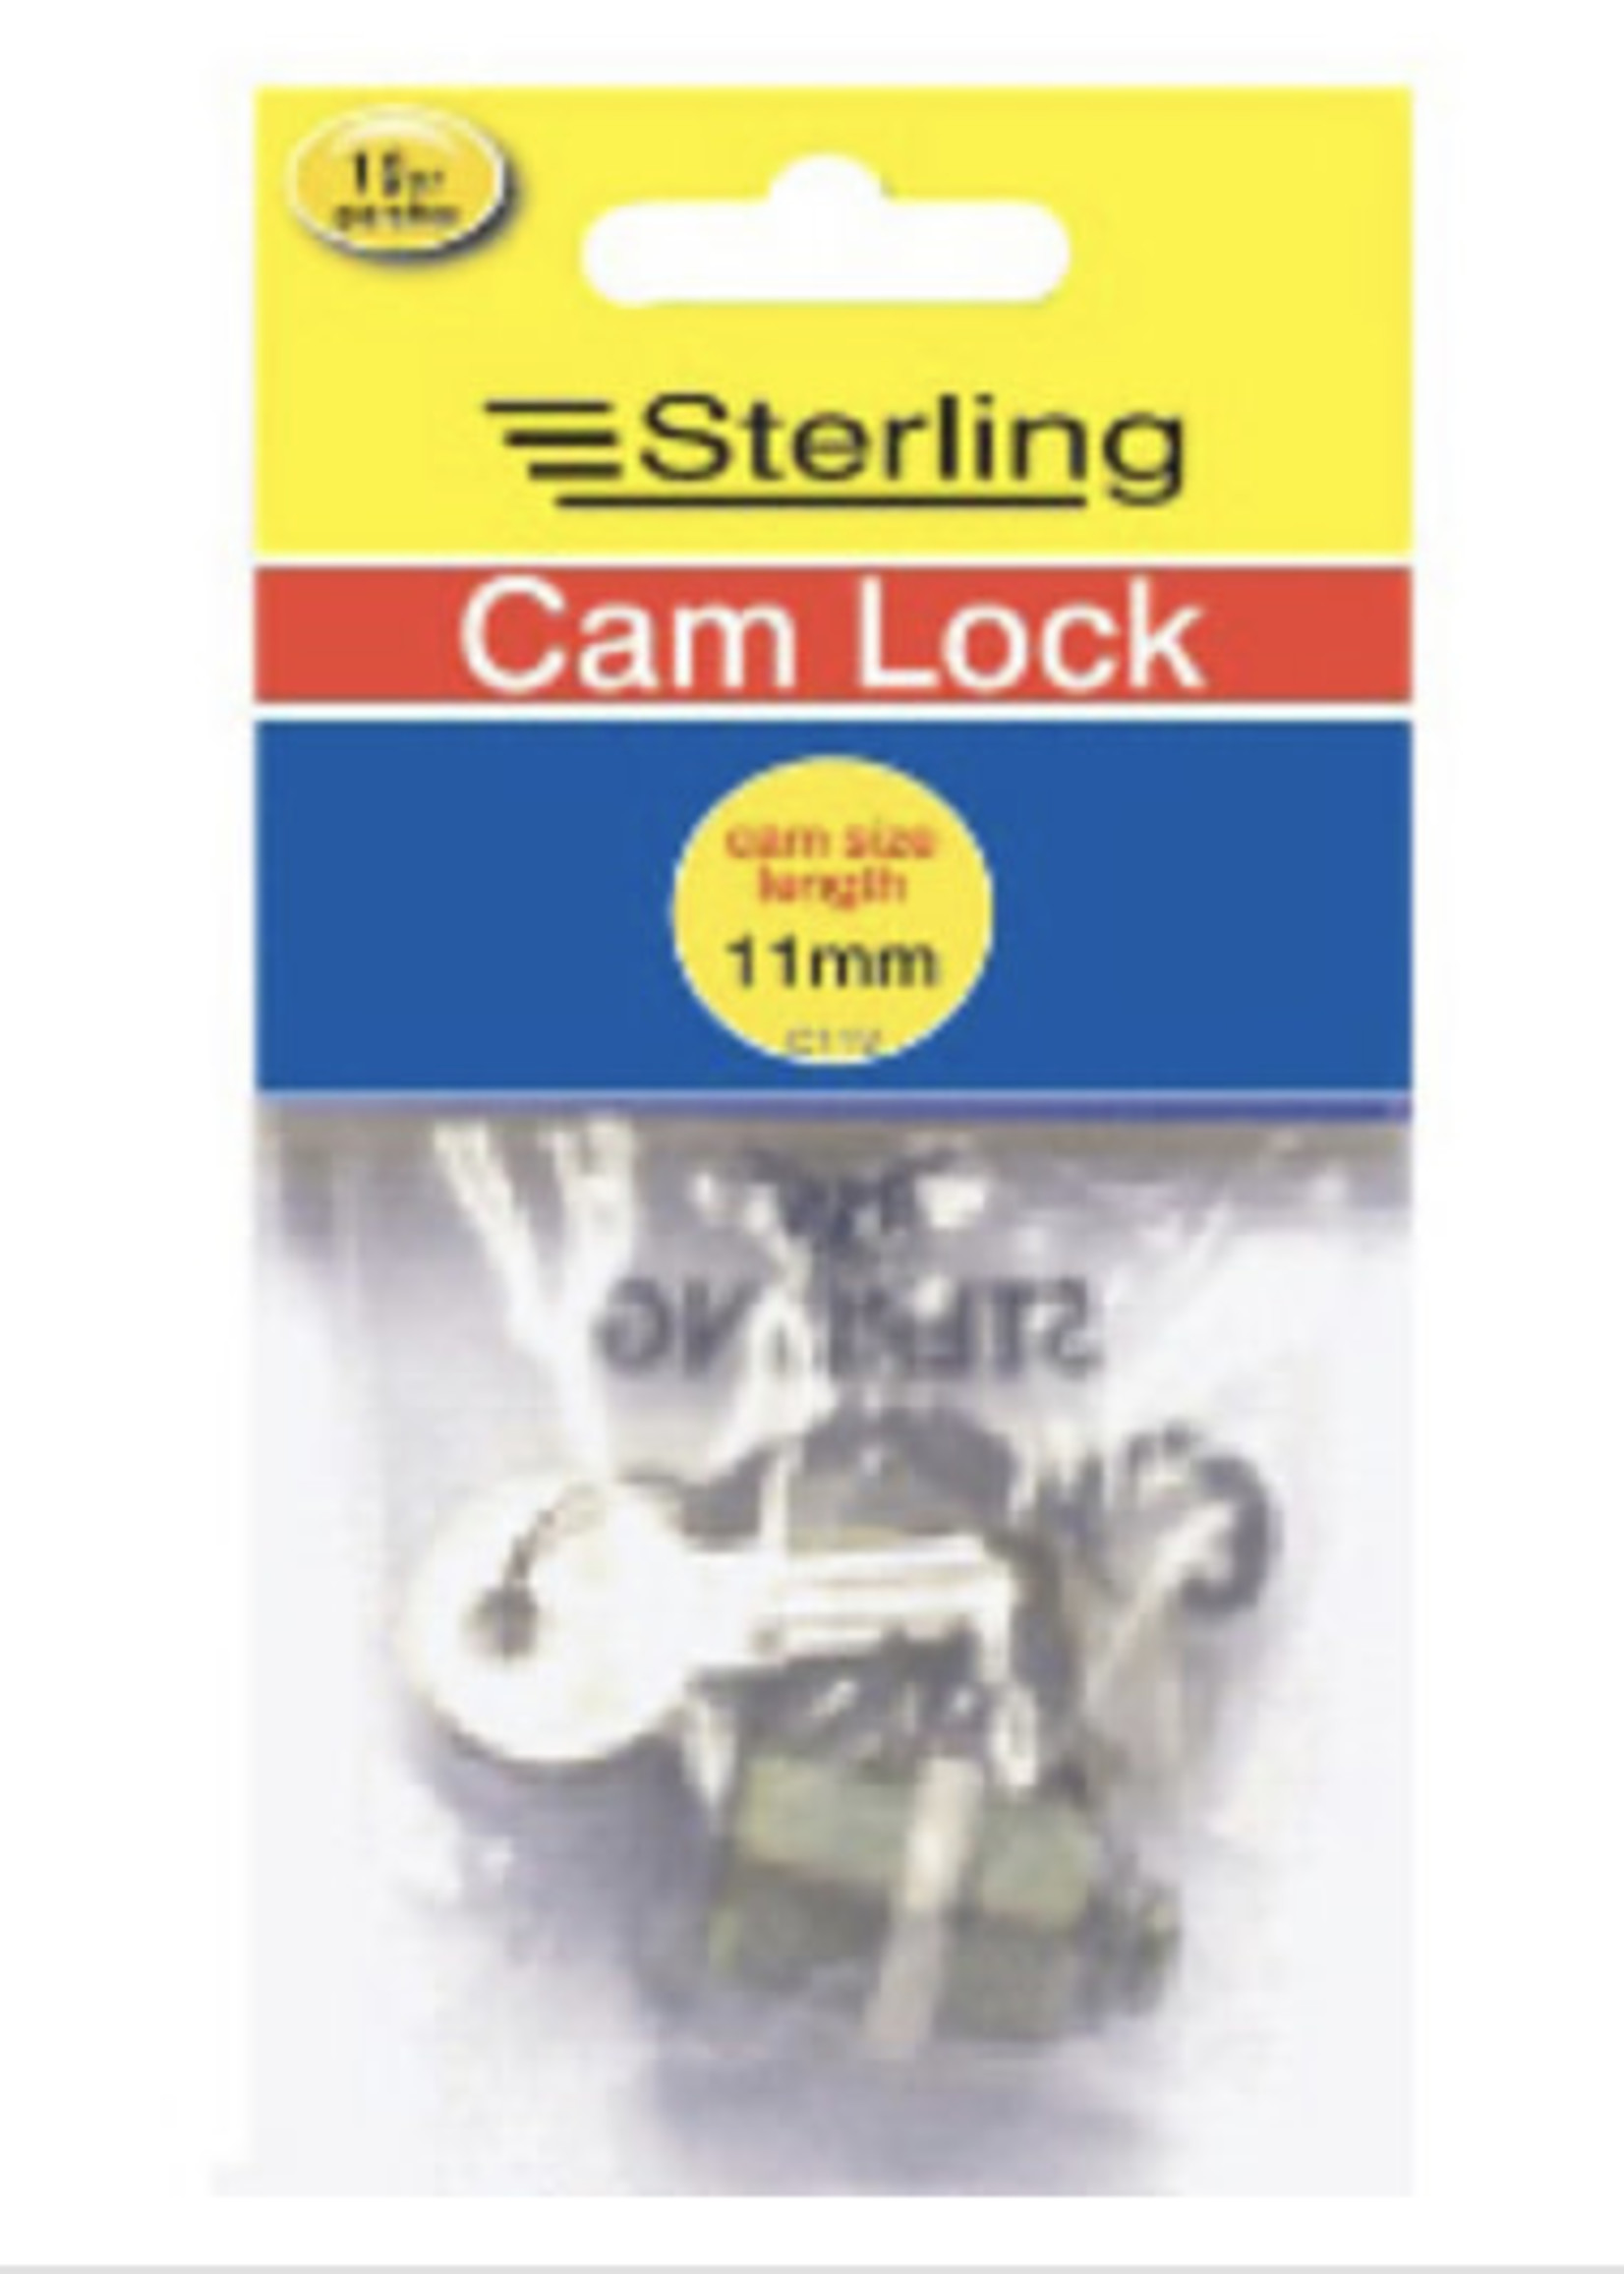 Sterling Sterling Camlock 11mm